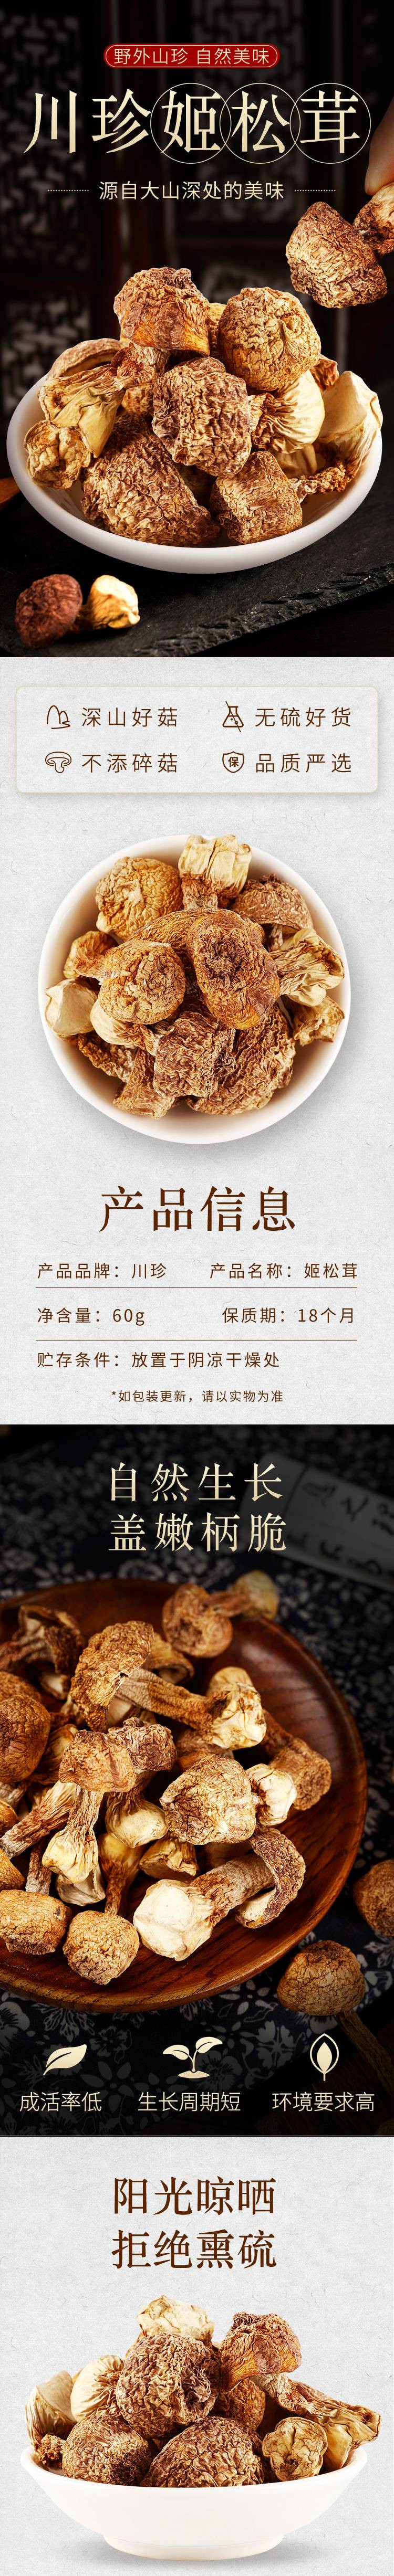 川珍 姬松茸 60g四川菇菌菇食用菌干货山珍土特产 煲汤食材